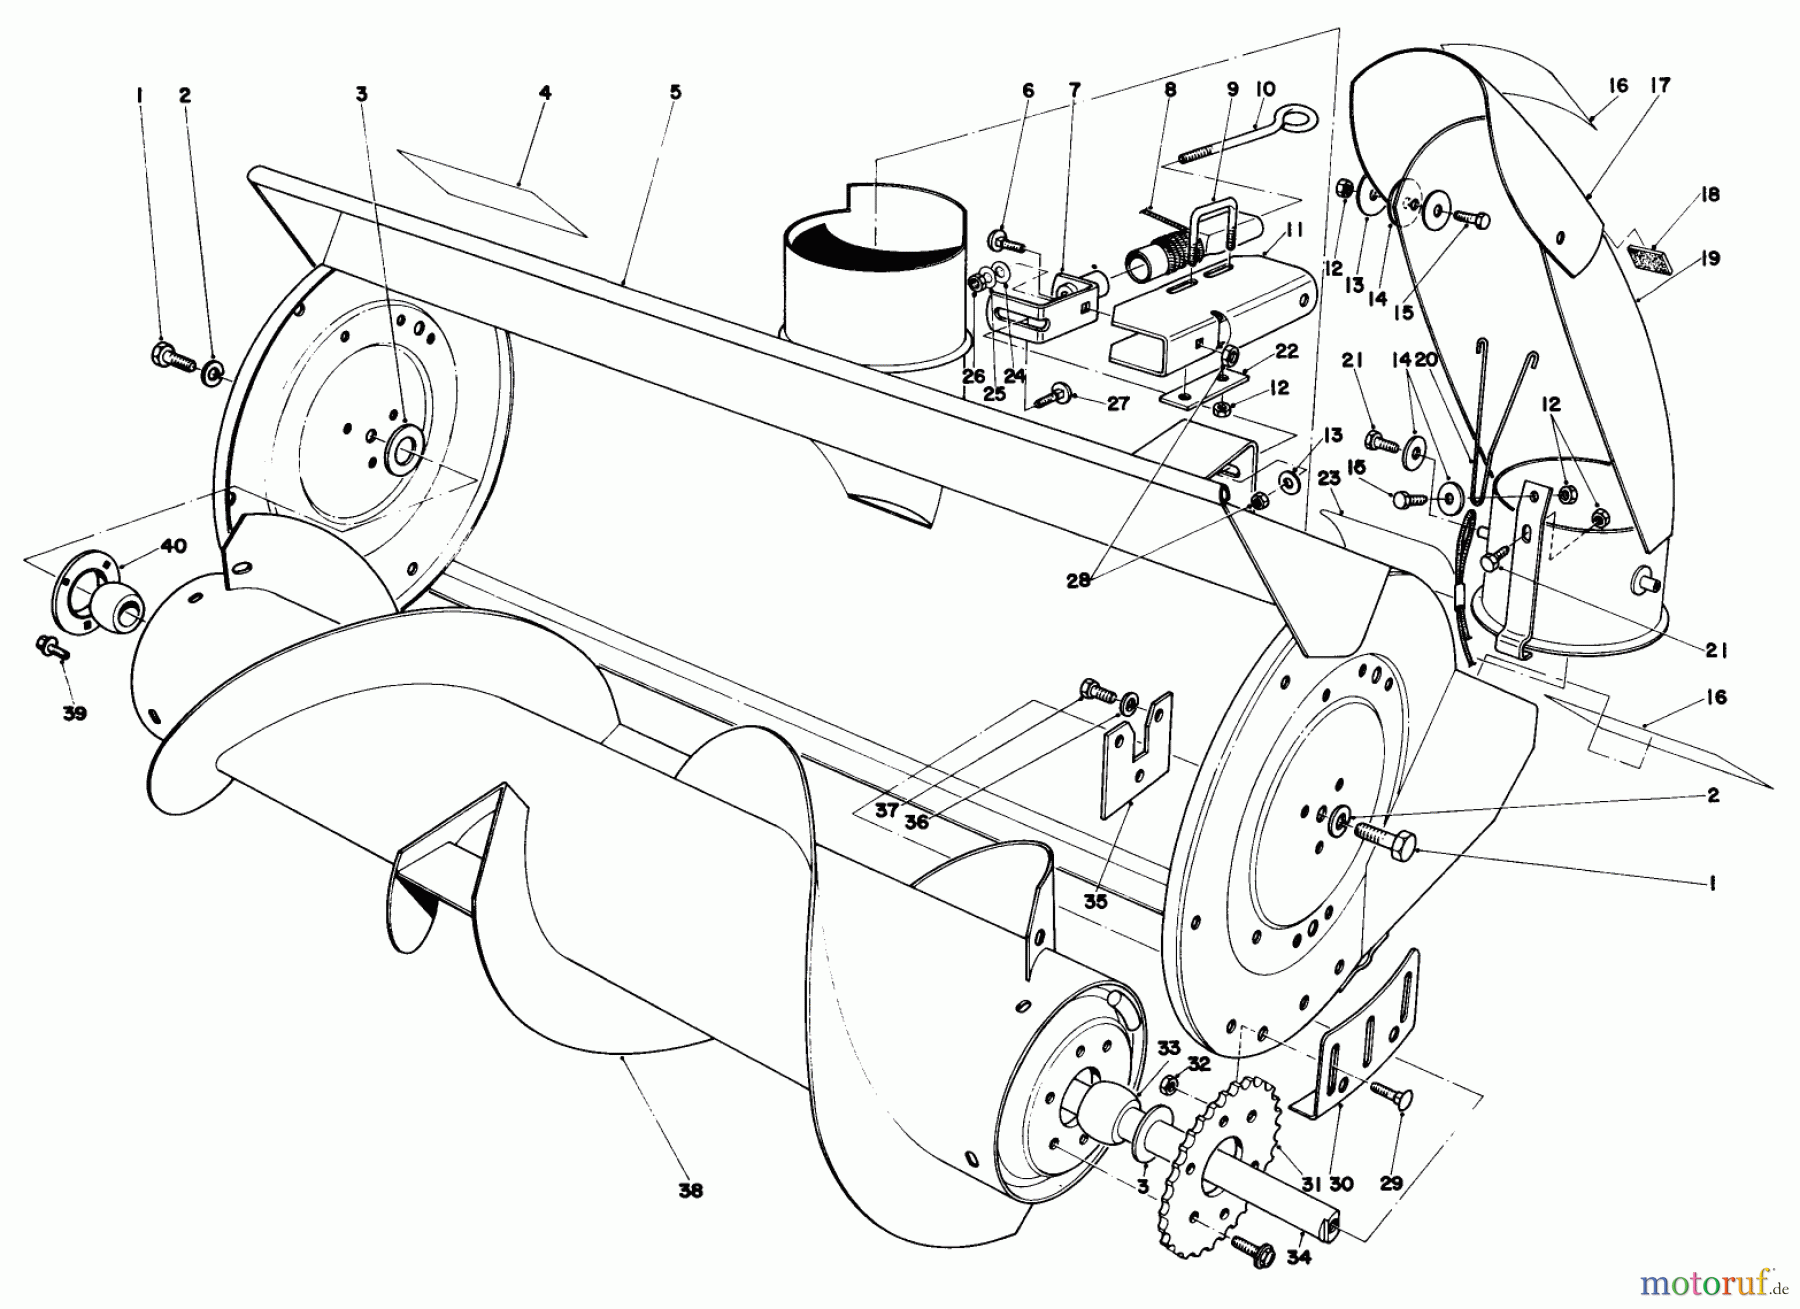  Toro Neu Mowers, Lawn & Garden Tractor Seite 1 57300 (8-32) - Toro 8-32 Front Engine Rider, 1983 (3000001-3999999) 36